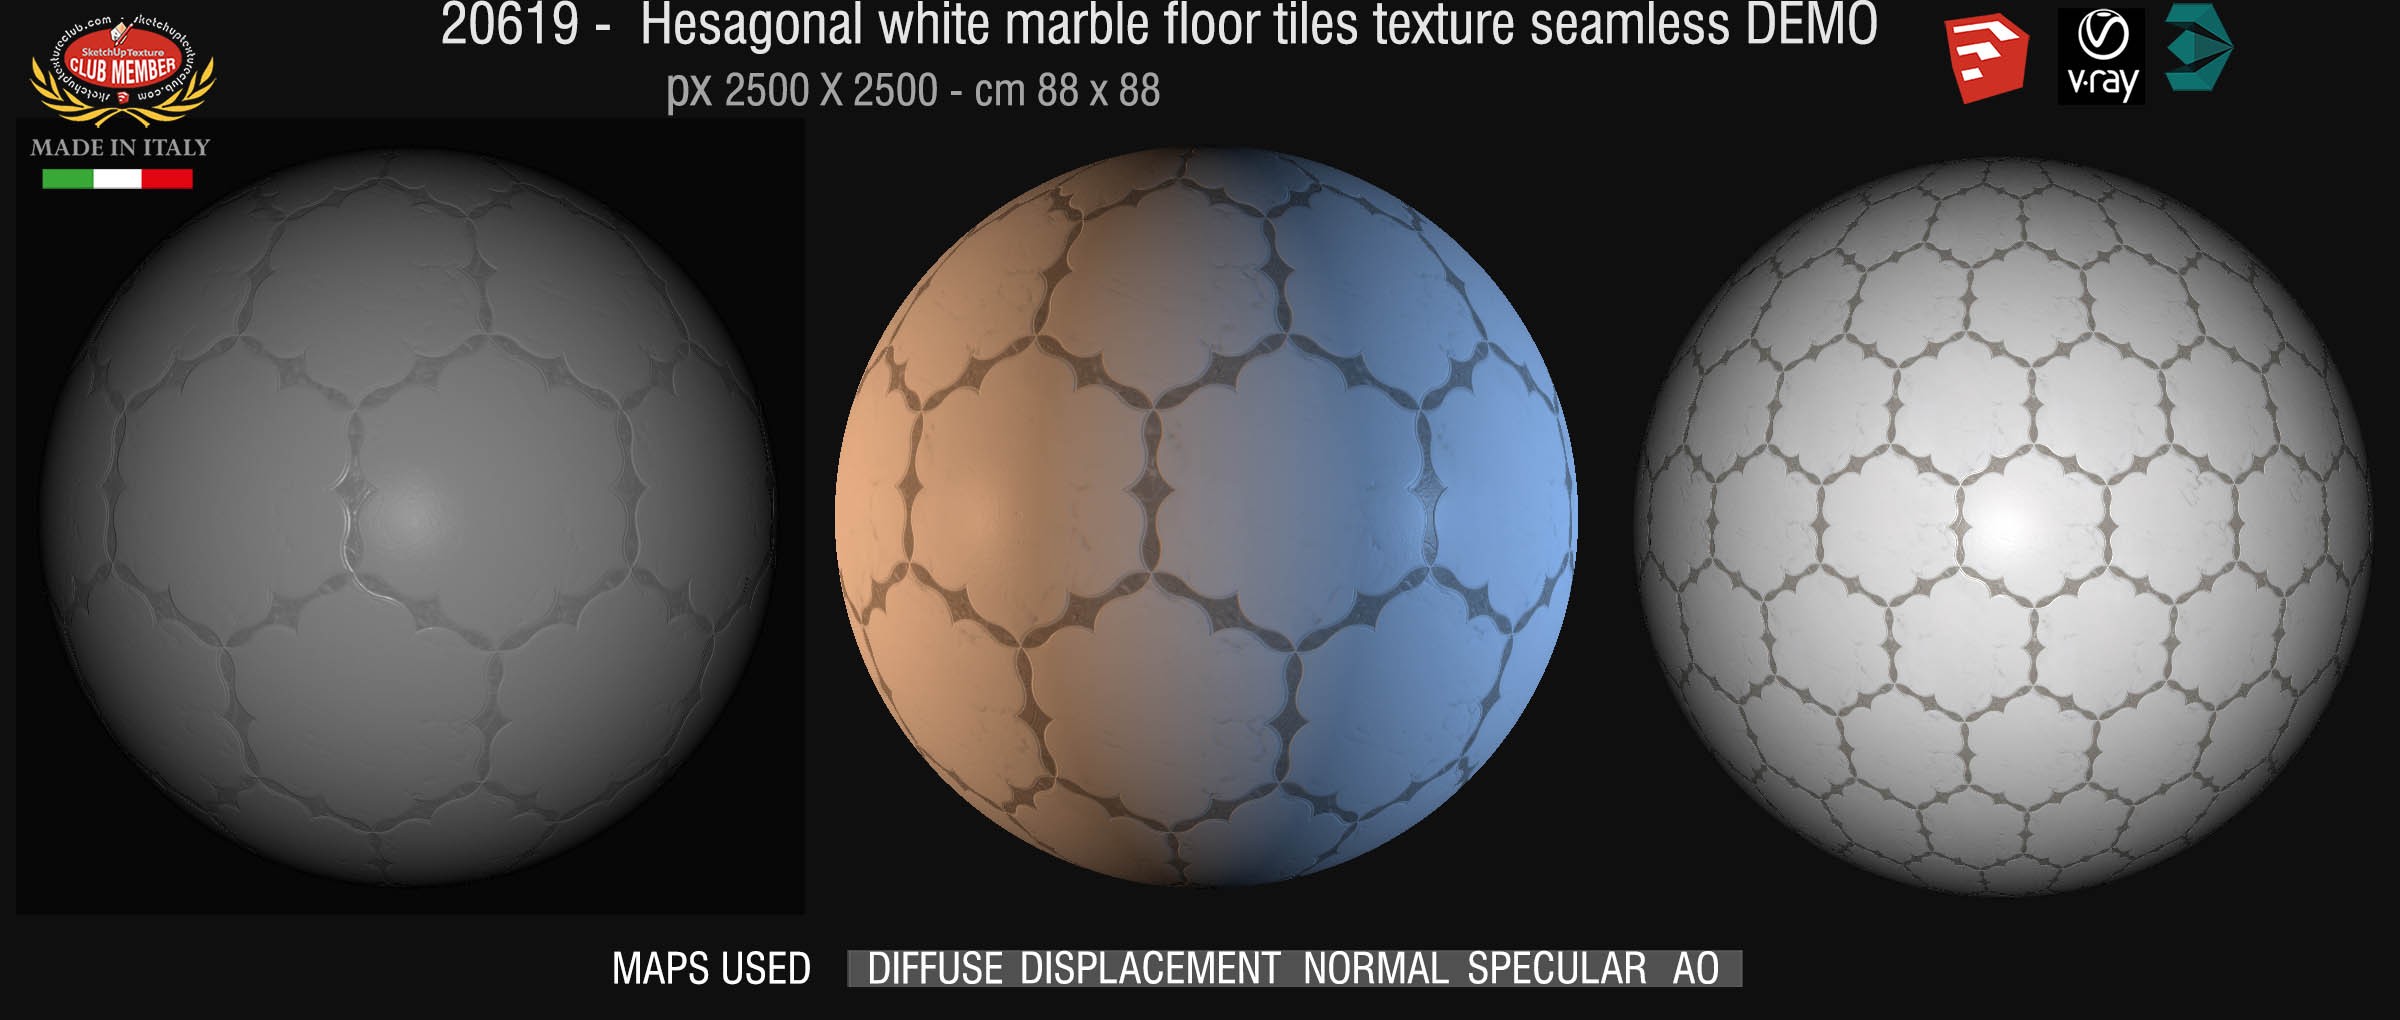 20619 Hexagonal white marble tile texture DEMO